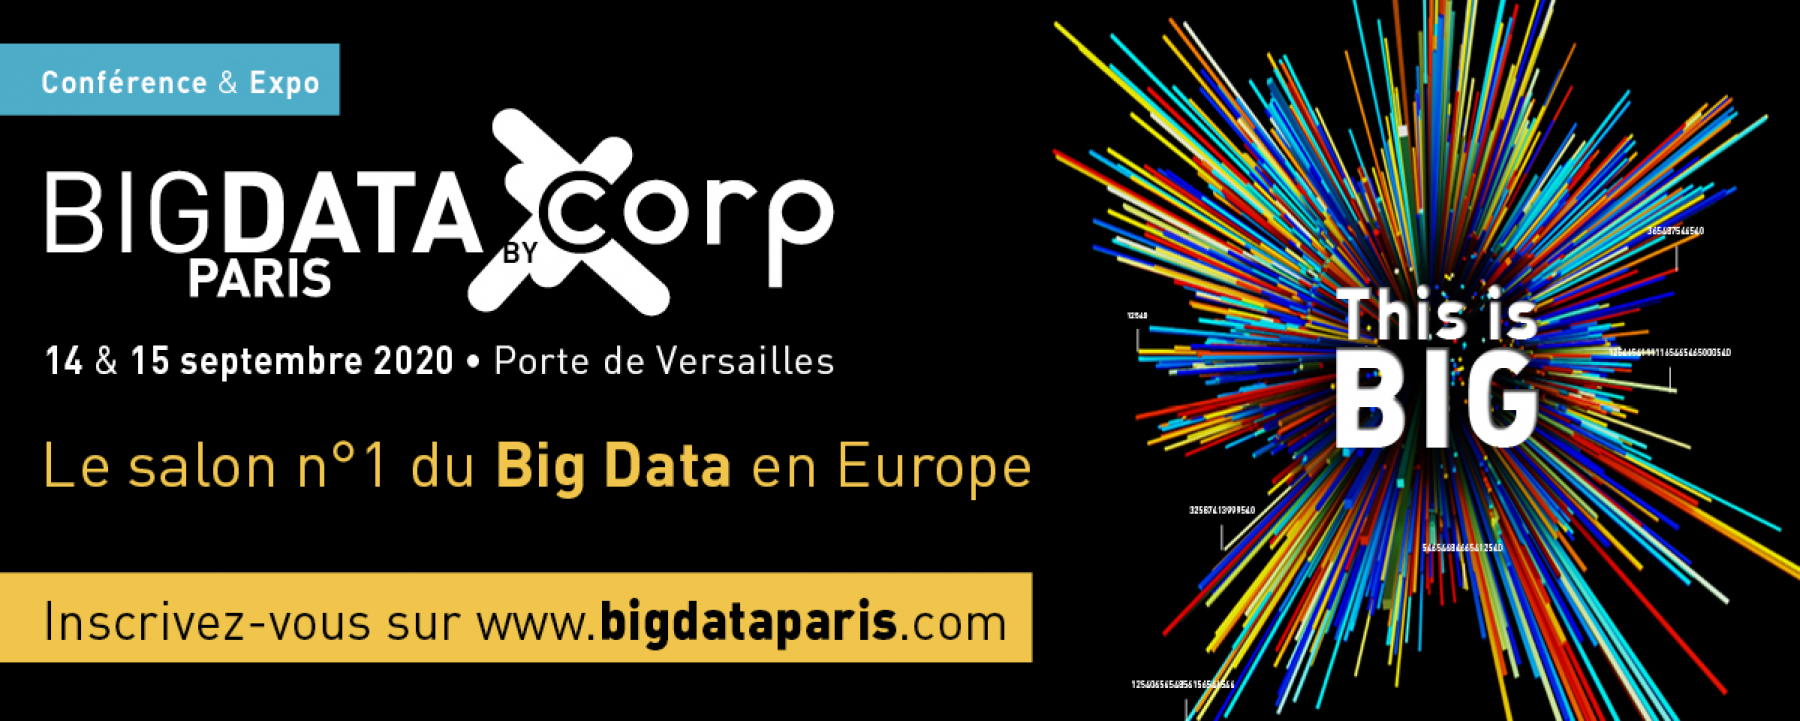 Big Data Paris, un événement organisé par Corp Agency, les 14 et 15 septembre